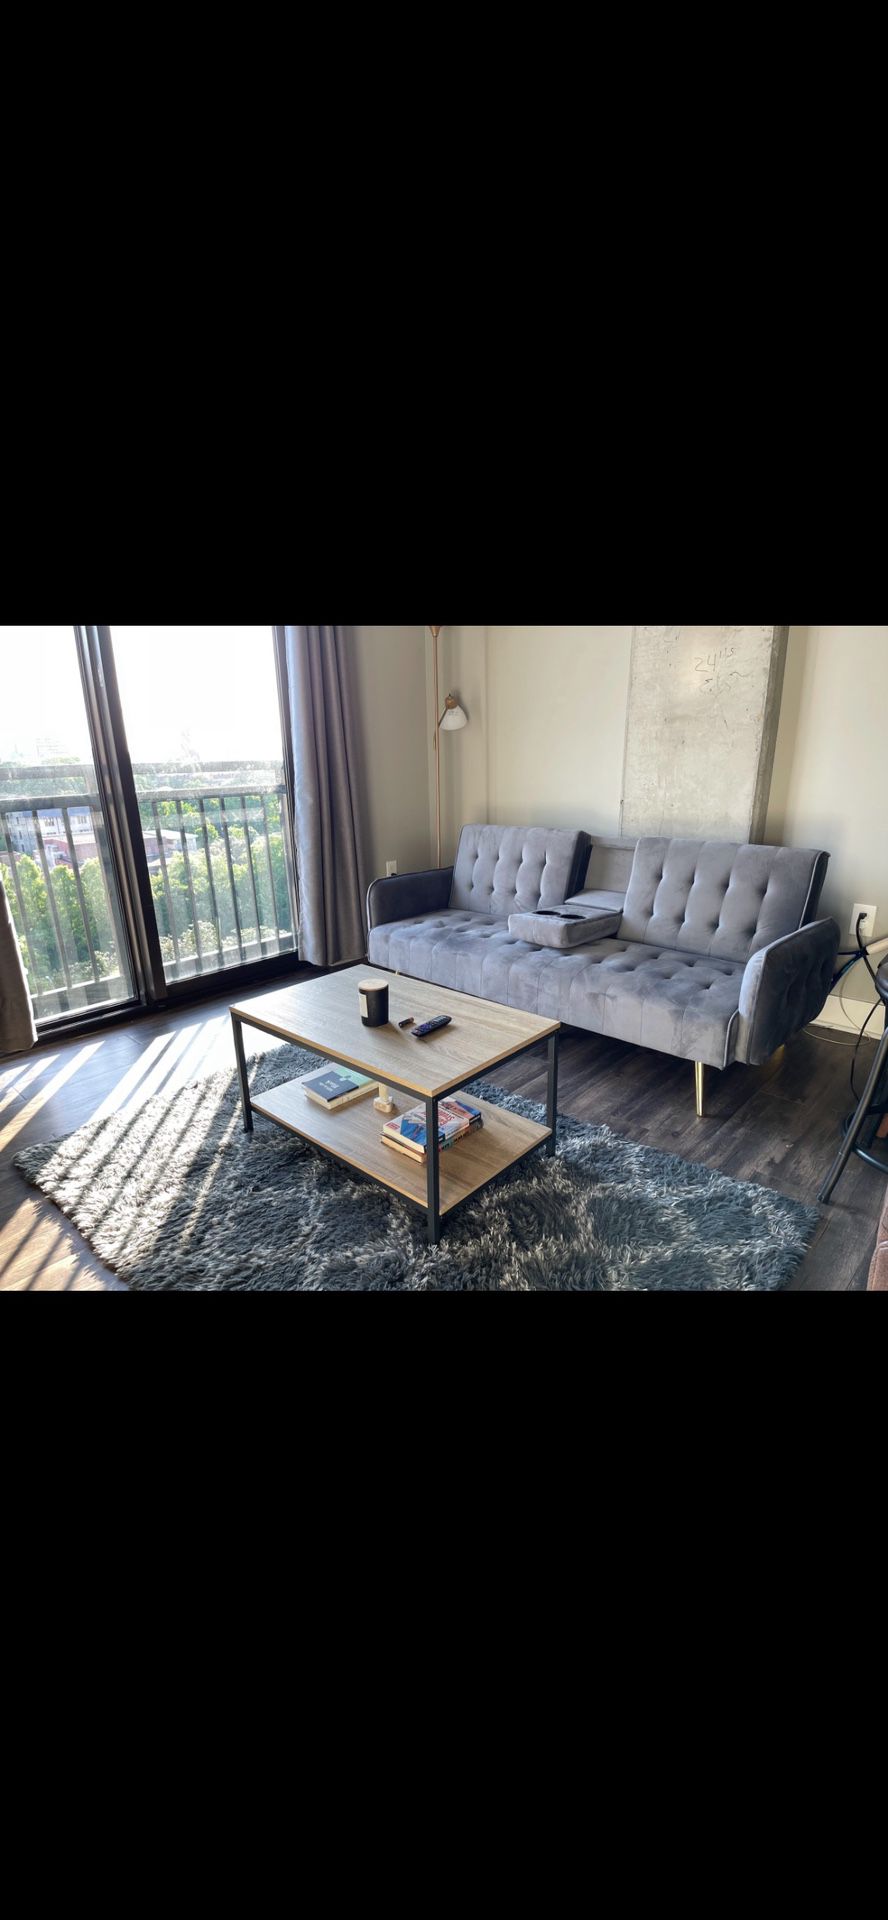 Sleek Modern Grey Futon/Couch